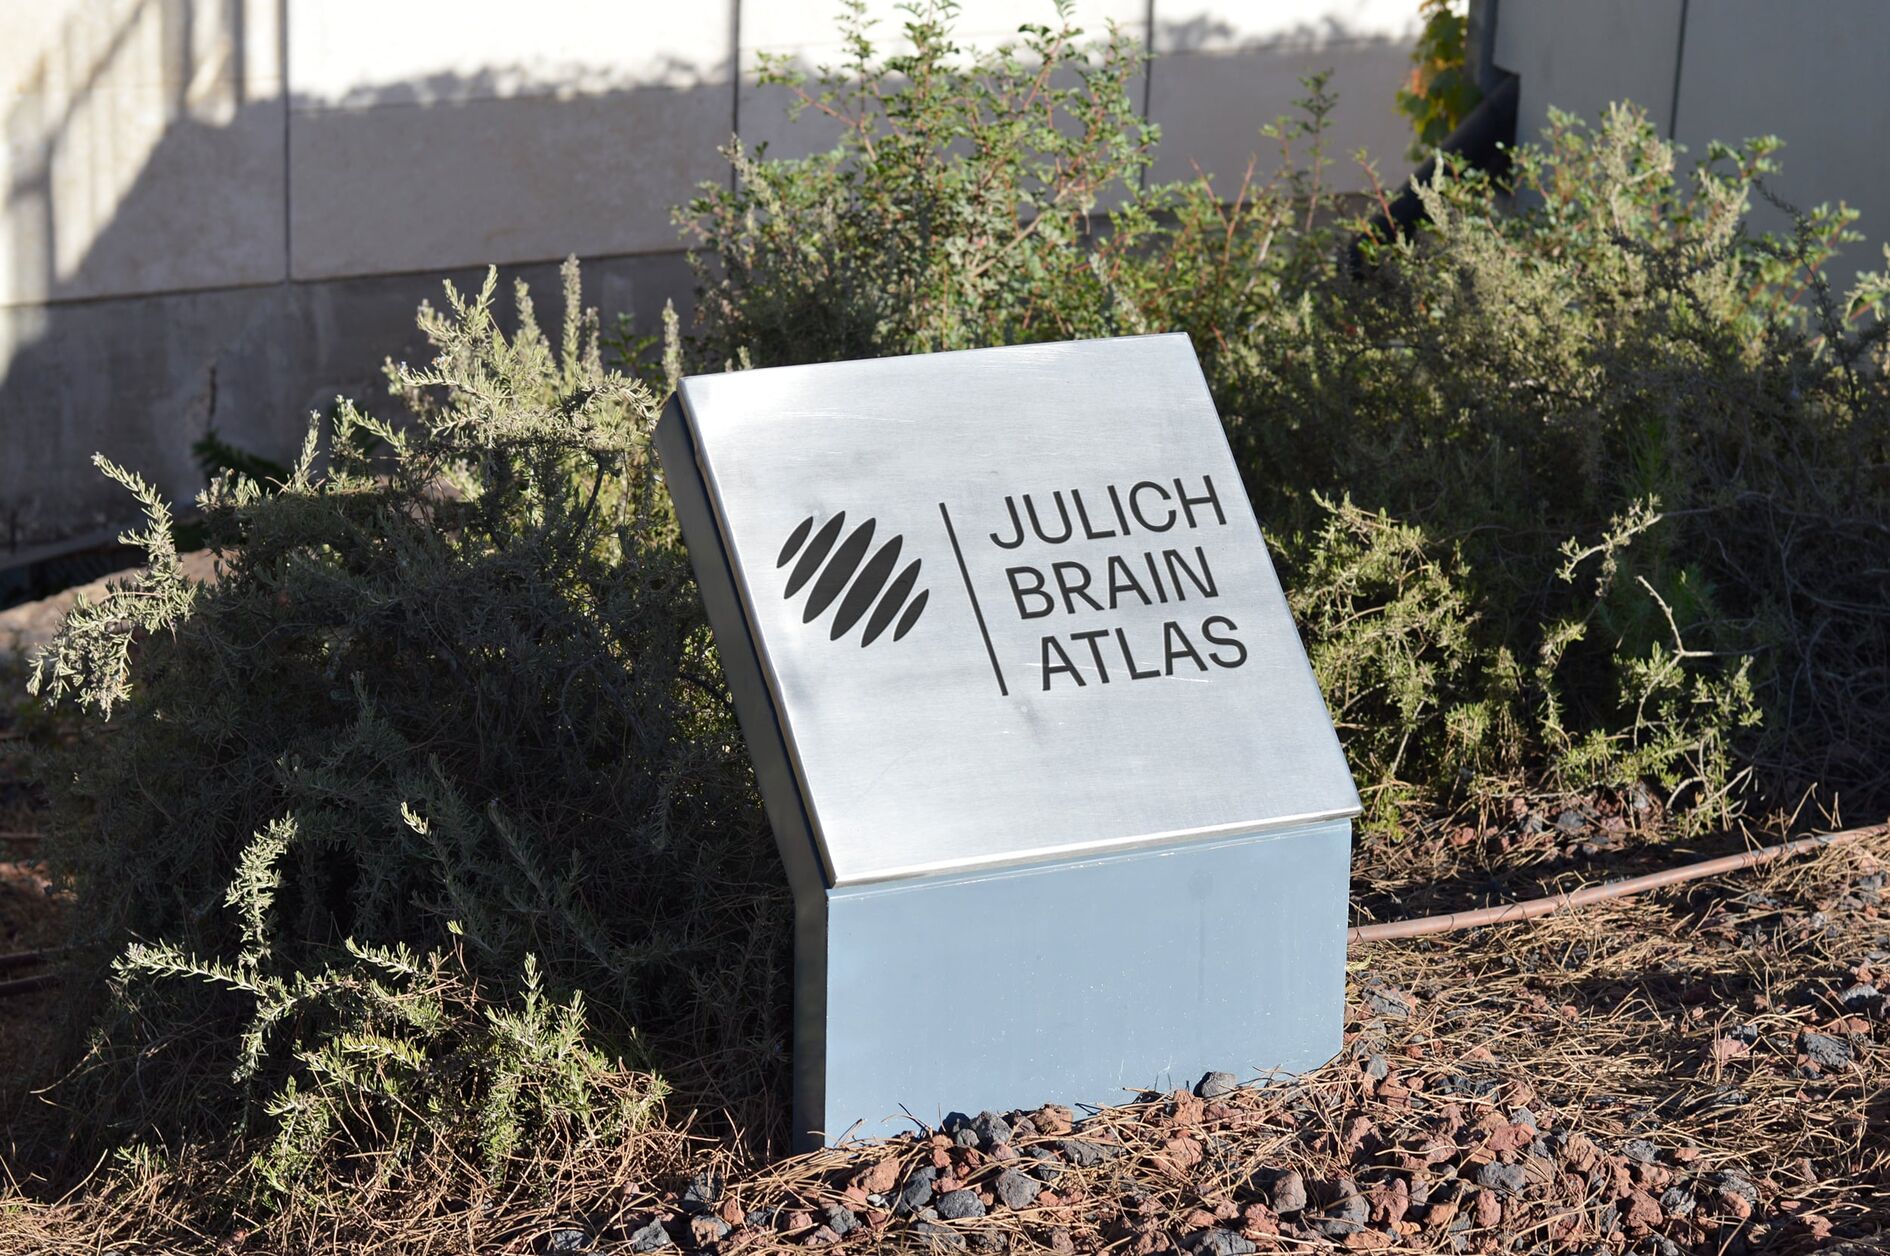 Julich Brain Atlas Signage